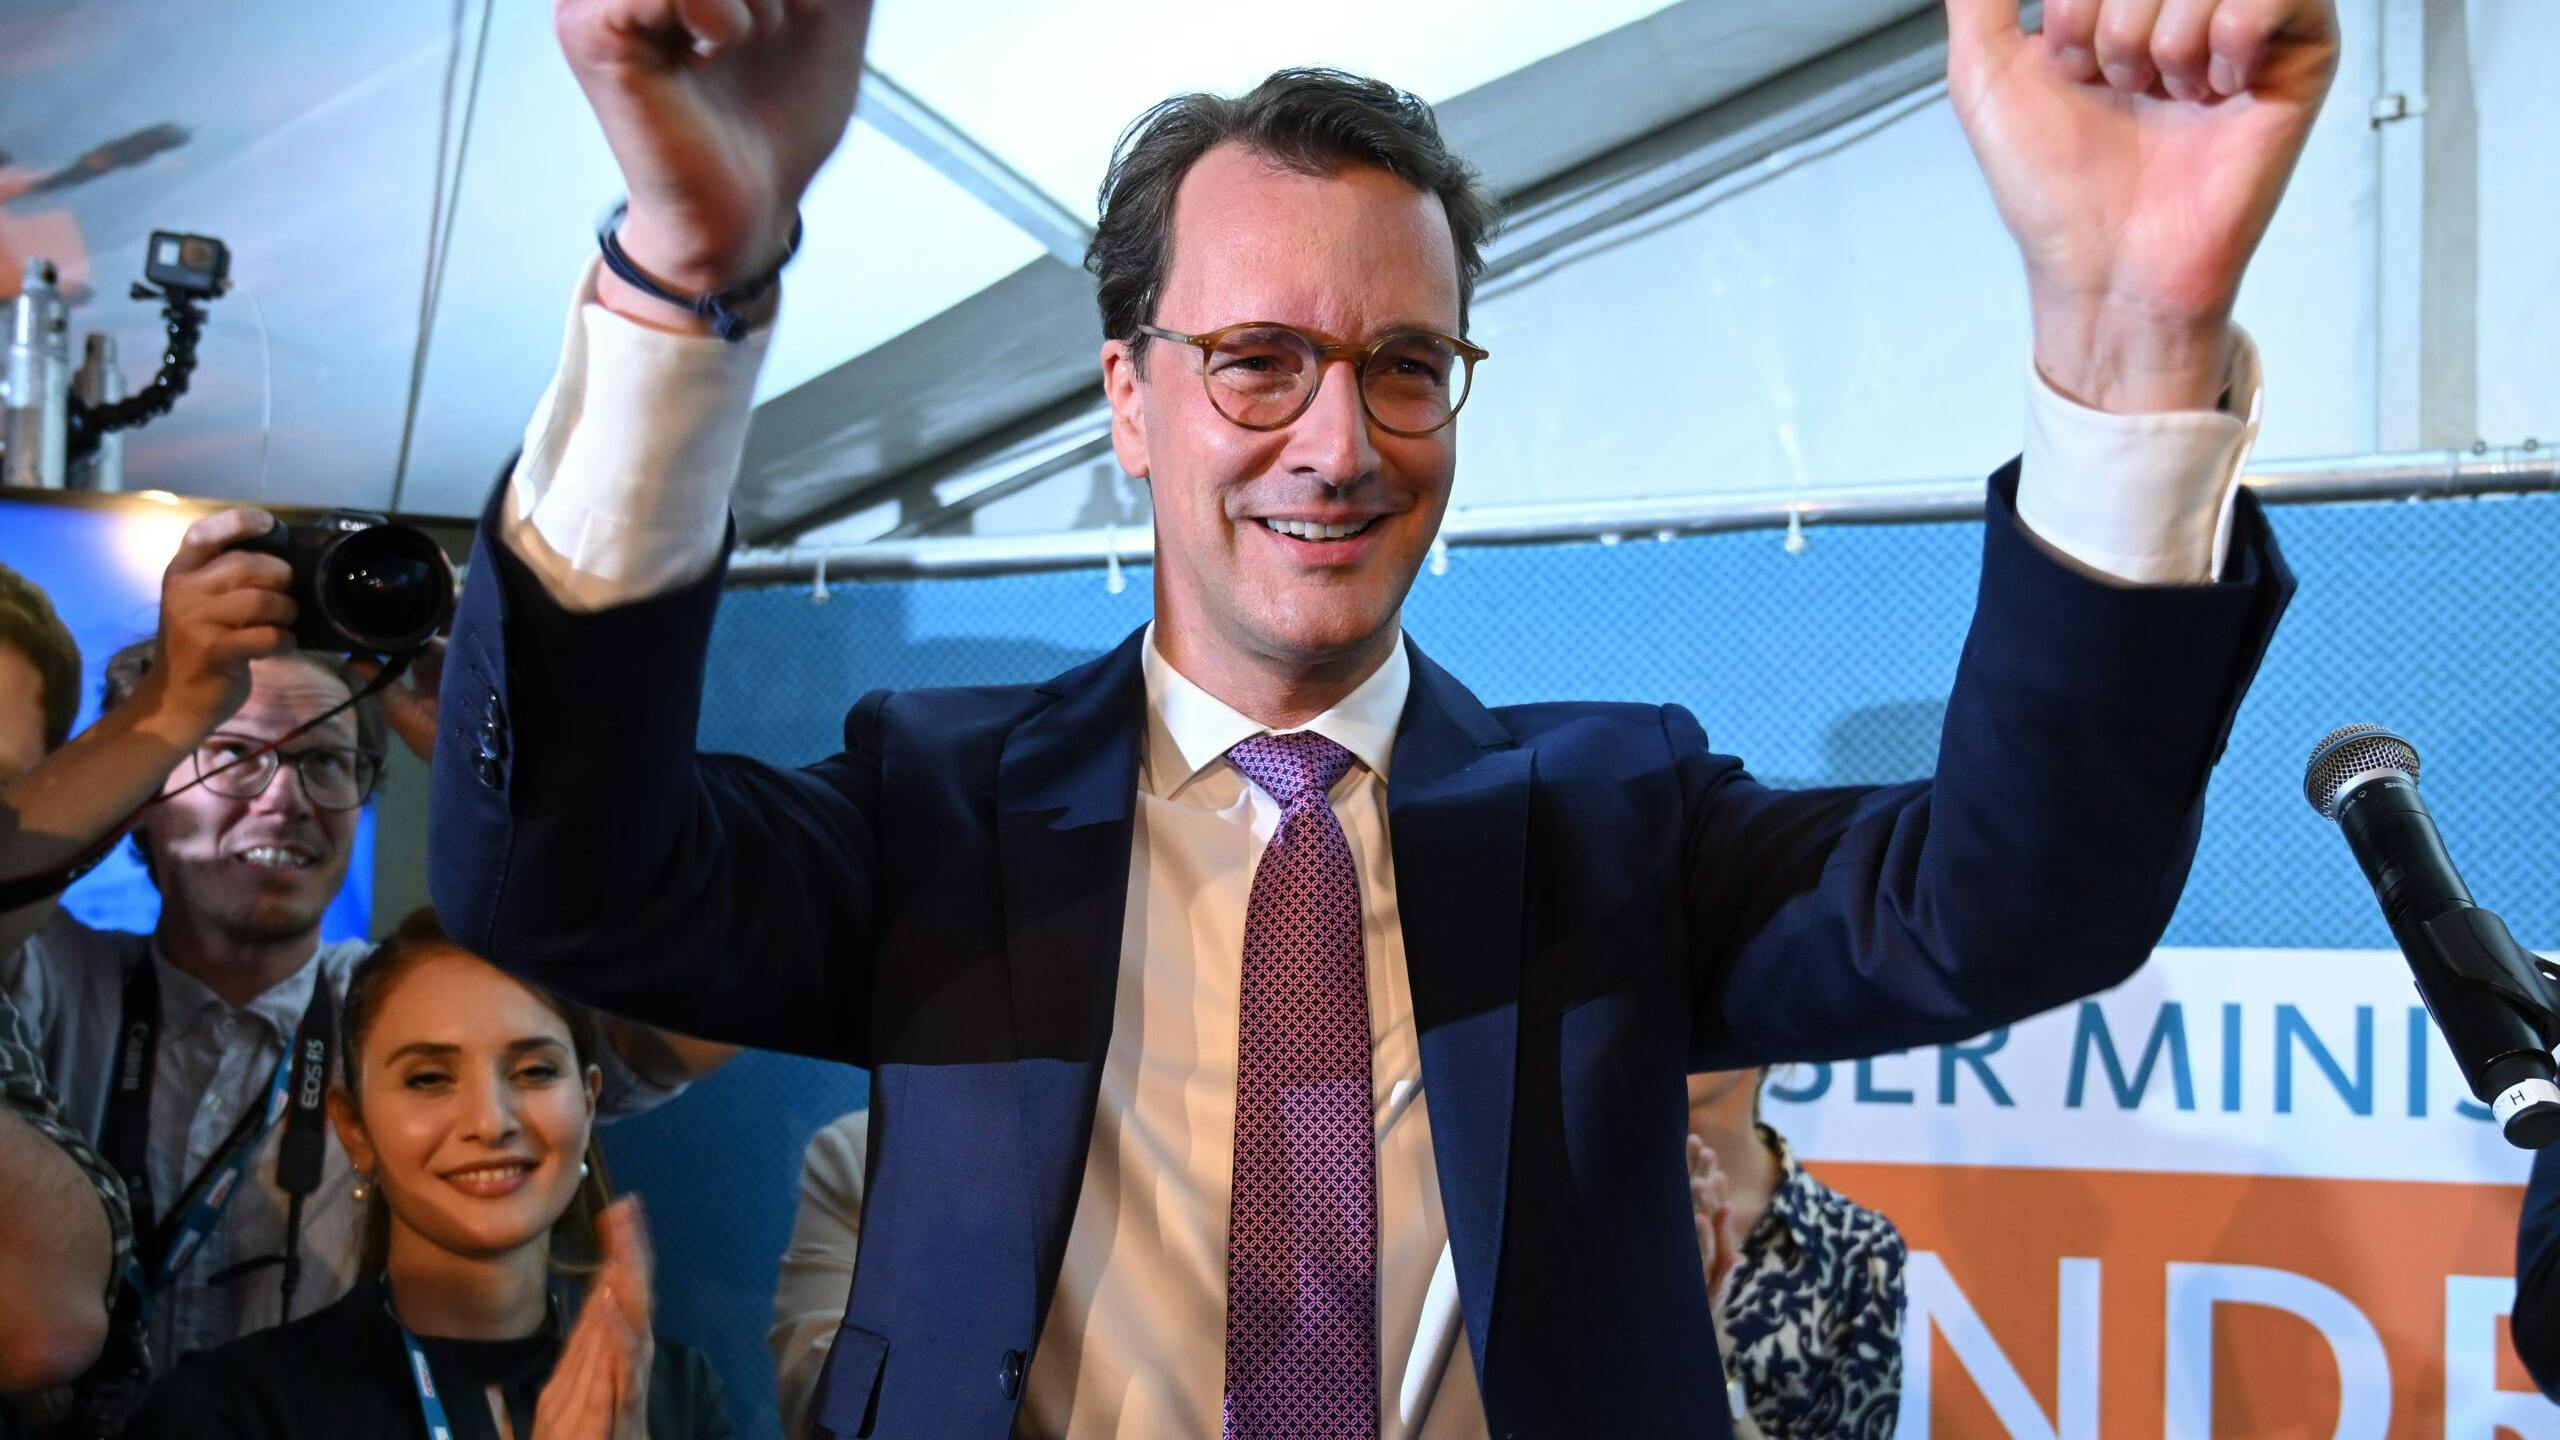 Deelstaatpremier Hendrik Wüst viert feest op de avond van de verkiezingen.